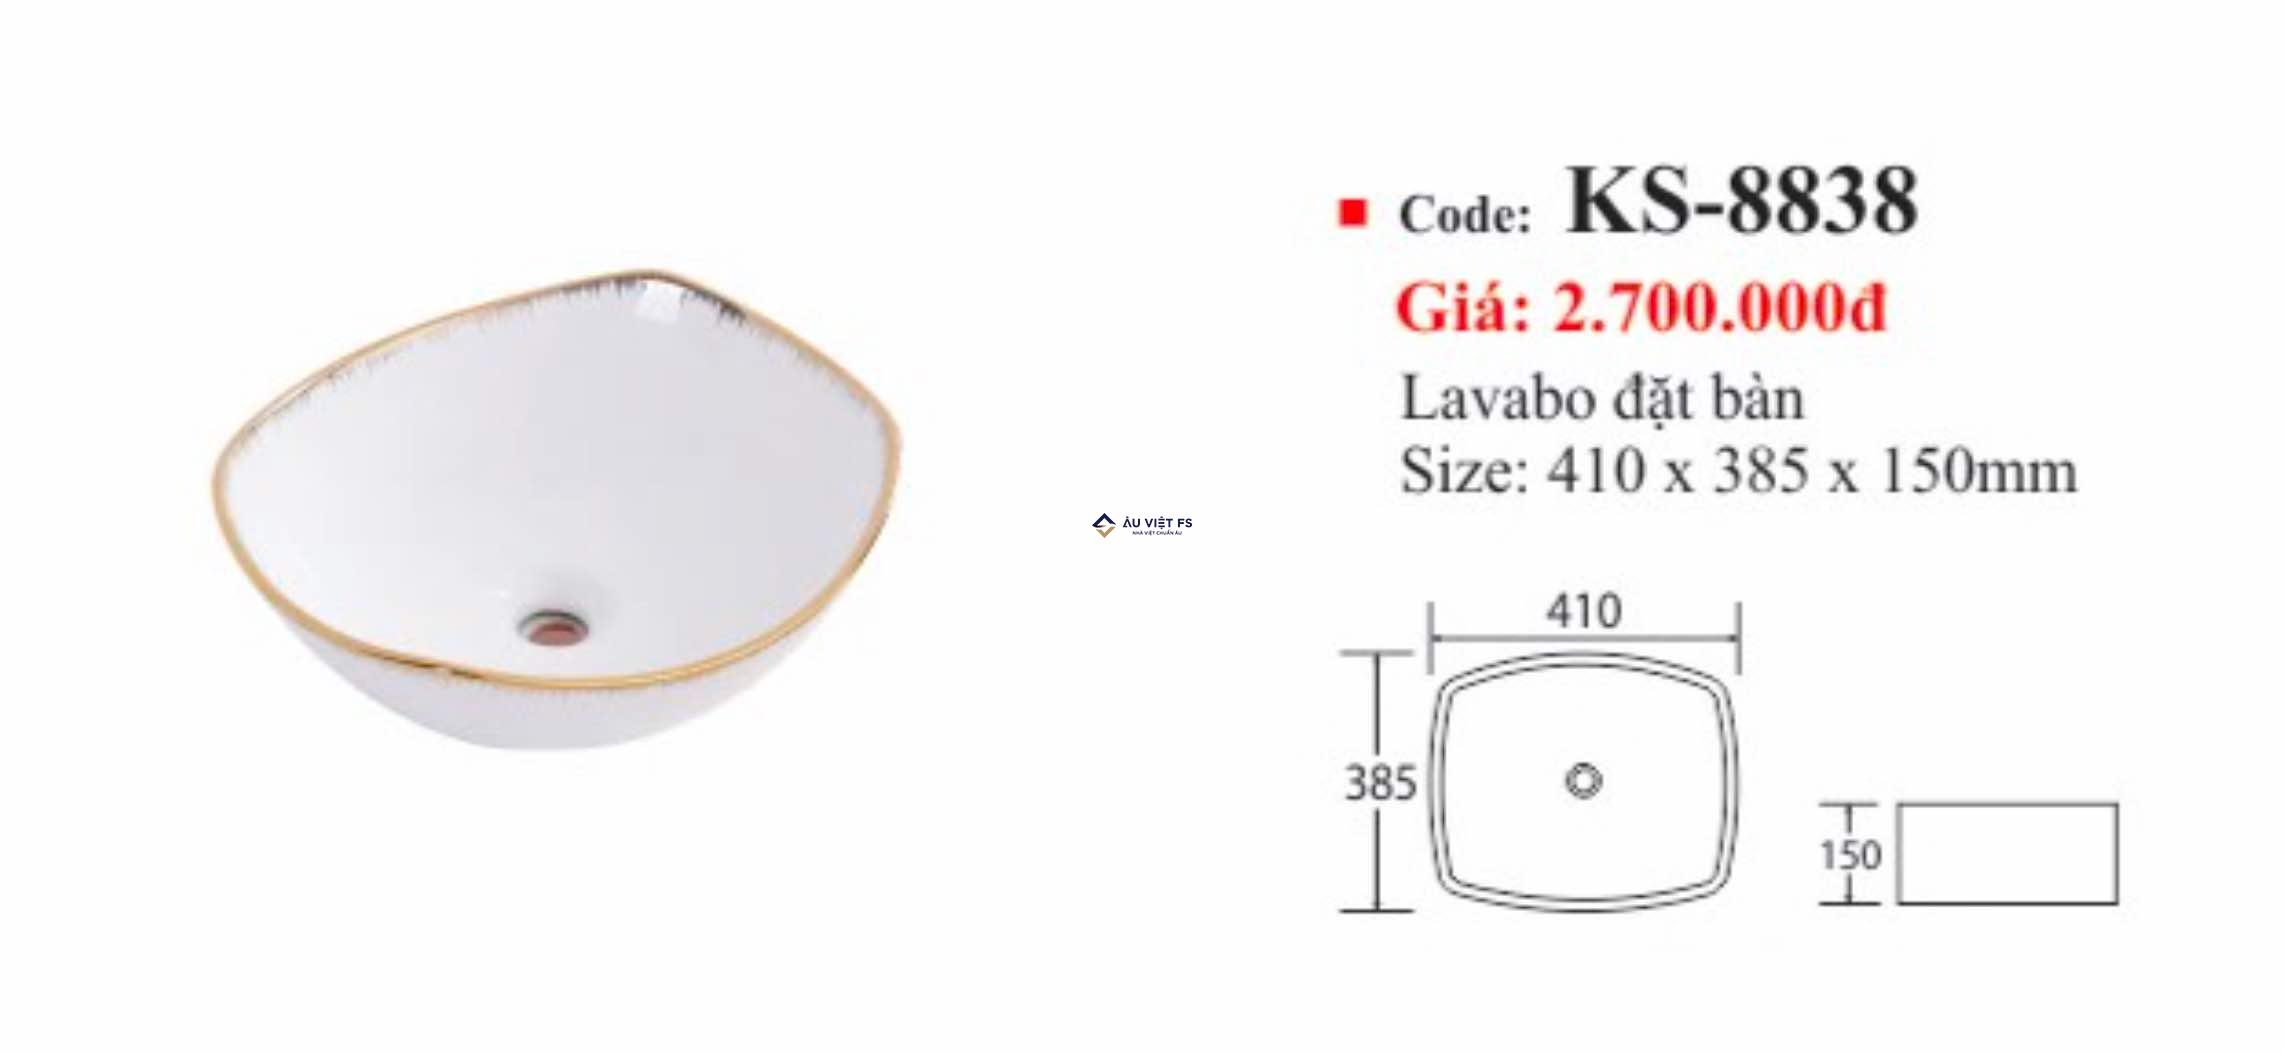 Đánh giá lavabo đặt bàn Kassani KS8838, lavabo đặt bàn, Kassani KS8838, Kassani, Lavabo Kassani, Lavabo đẹp